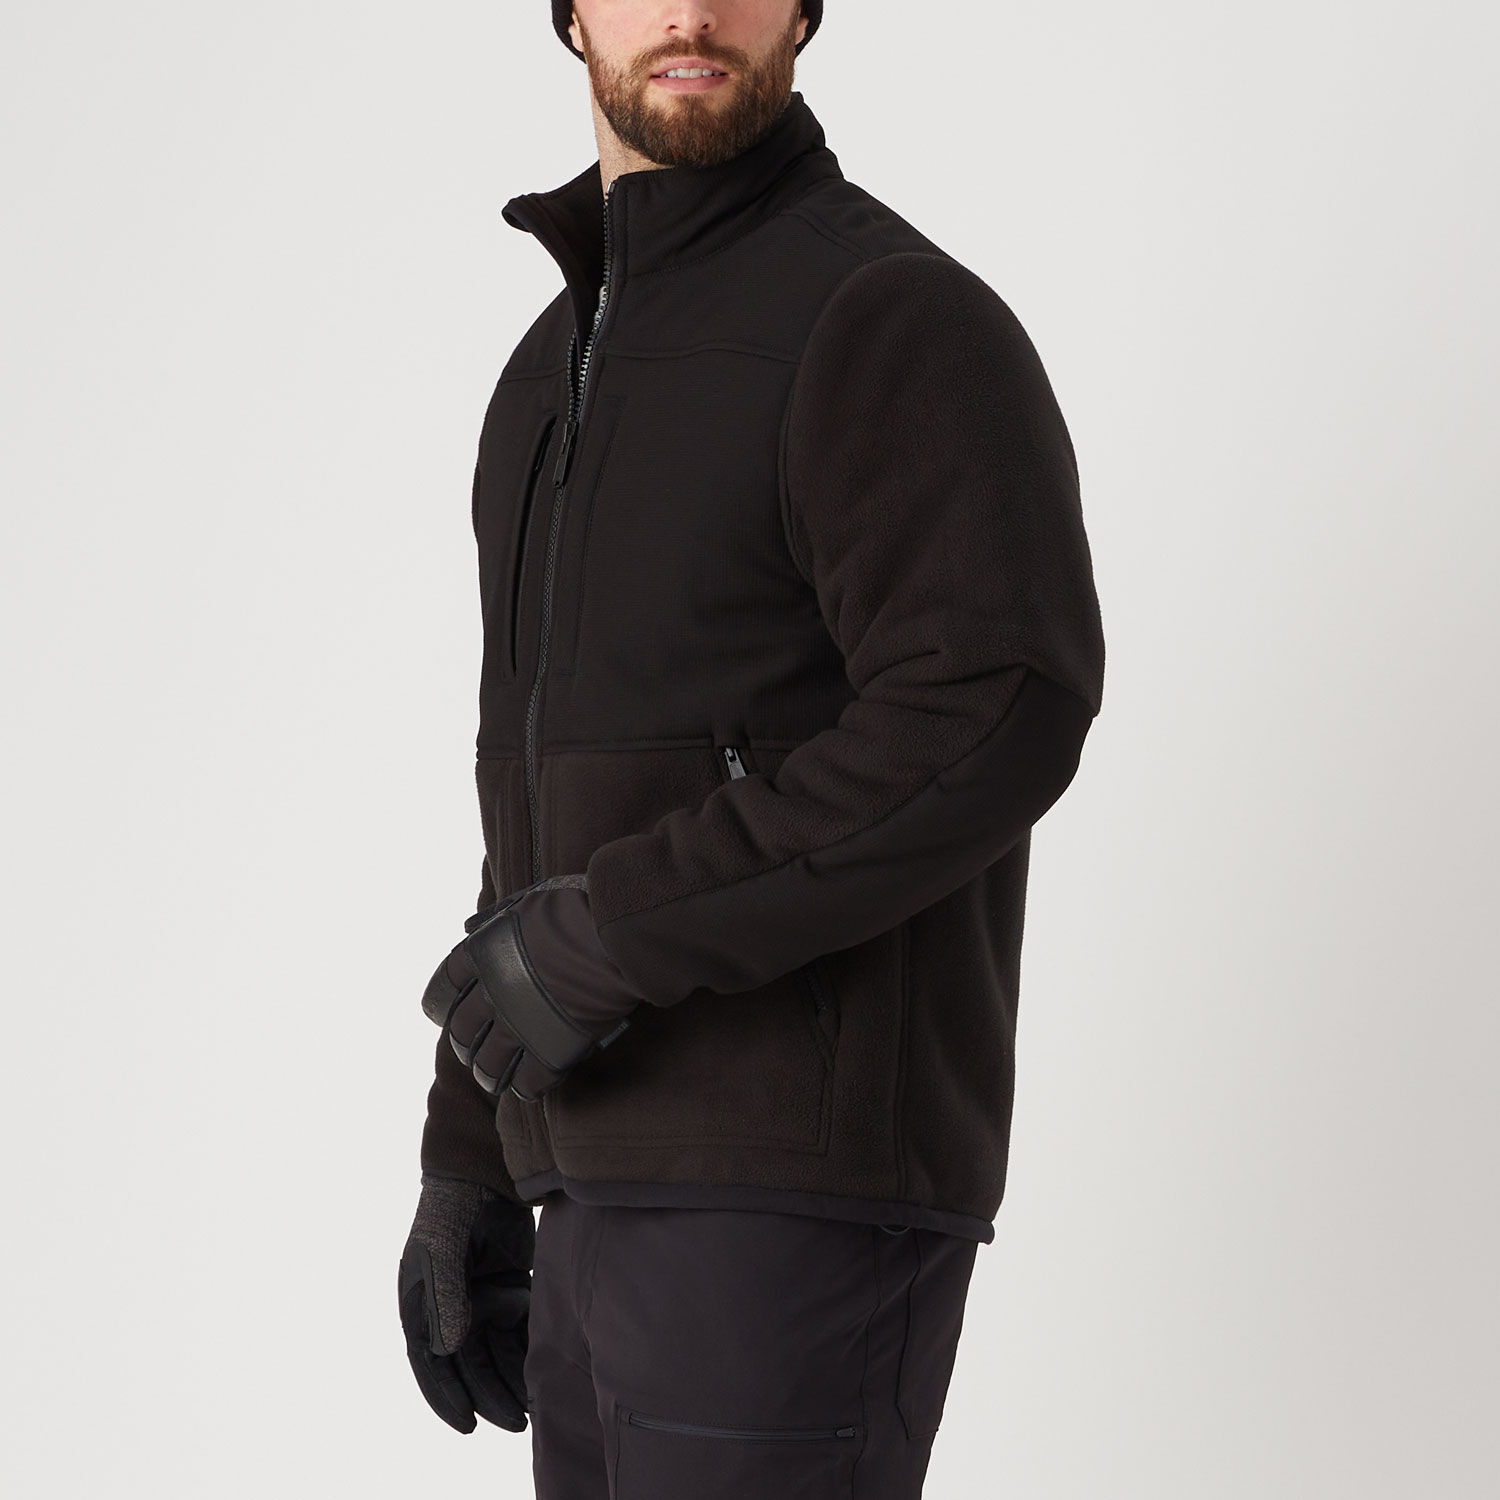 Men's Bear Hide Fleece Jacket | Duluth Trading Company